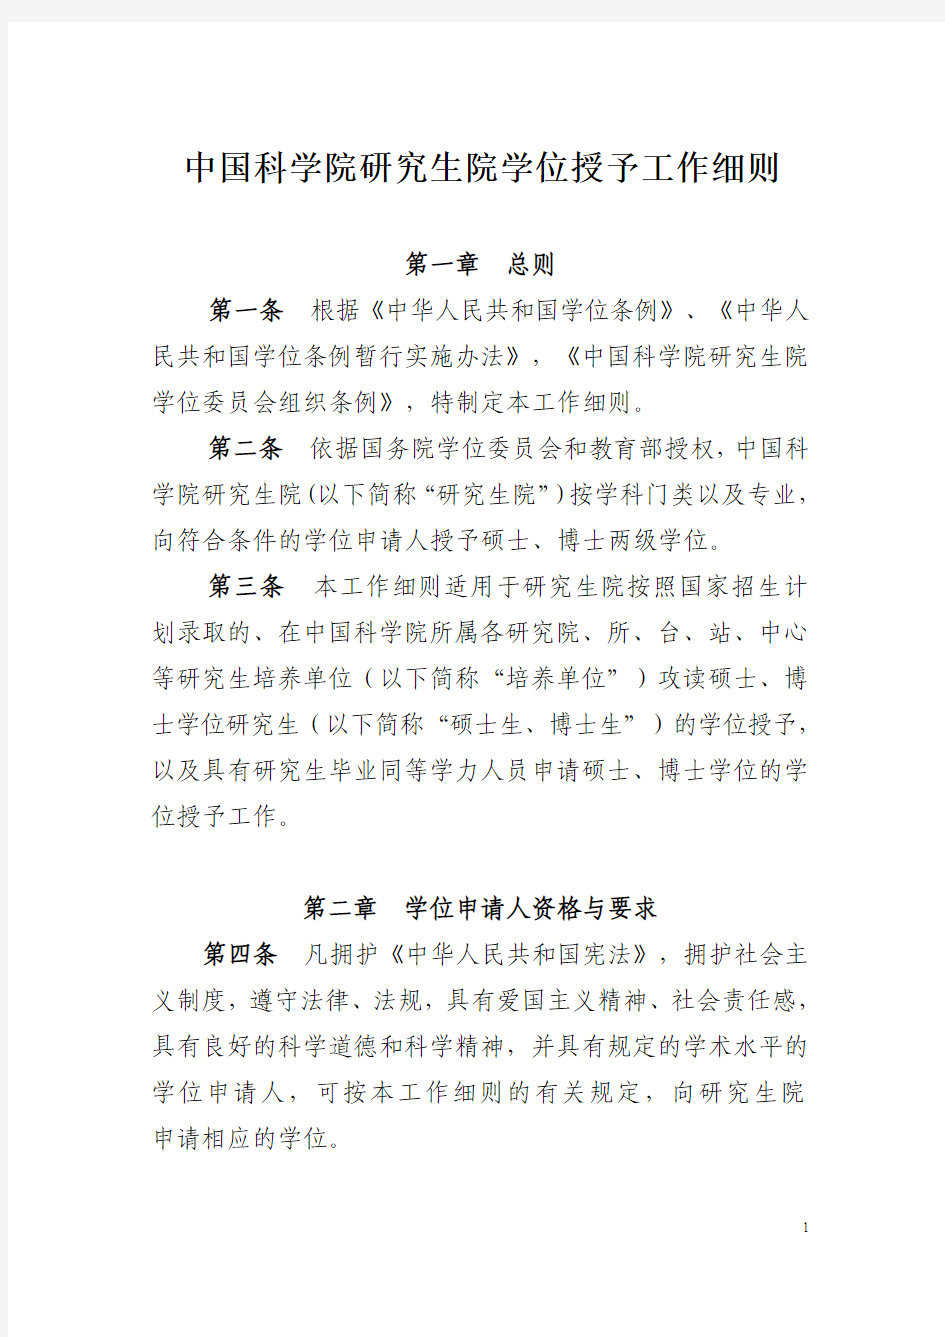 中国科学院研究生院学位授予工作细则